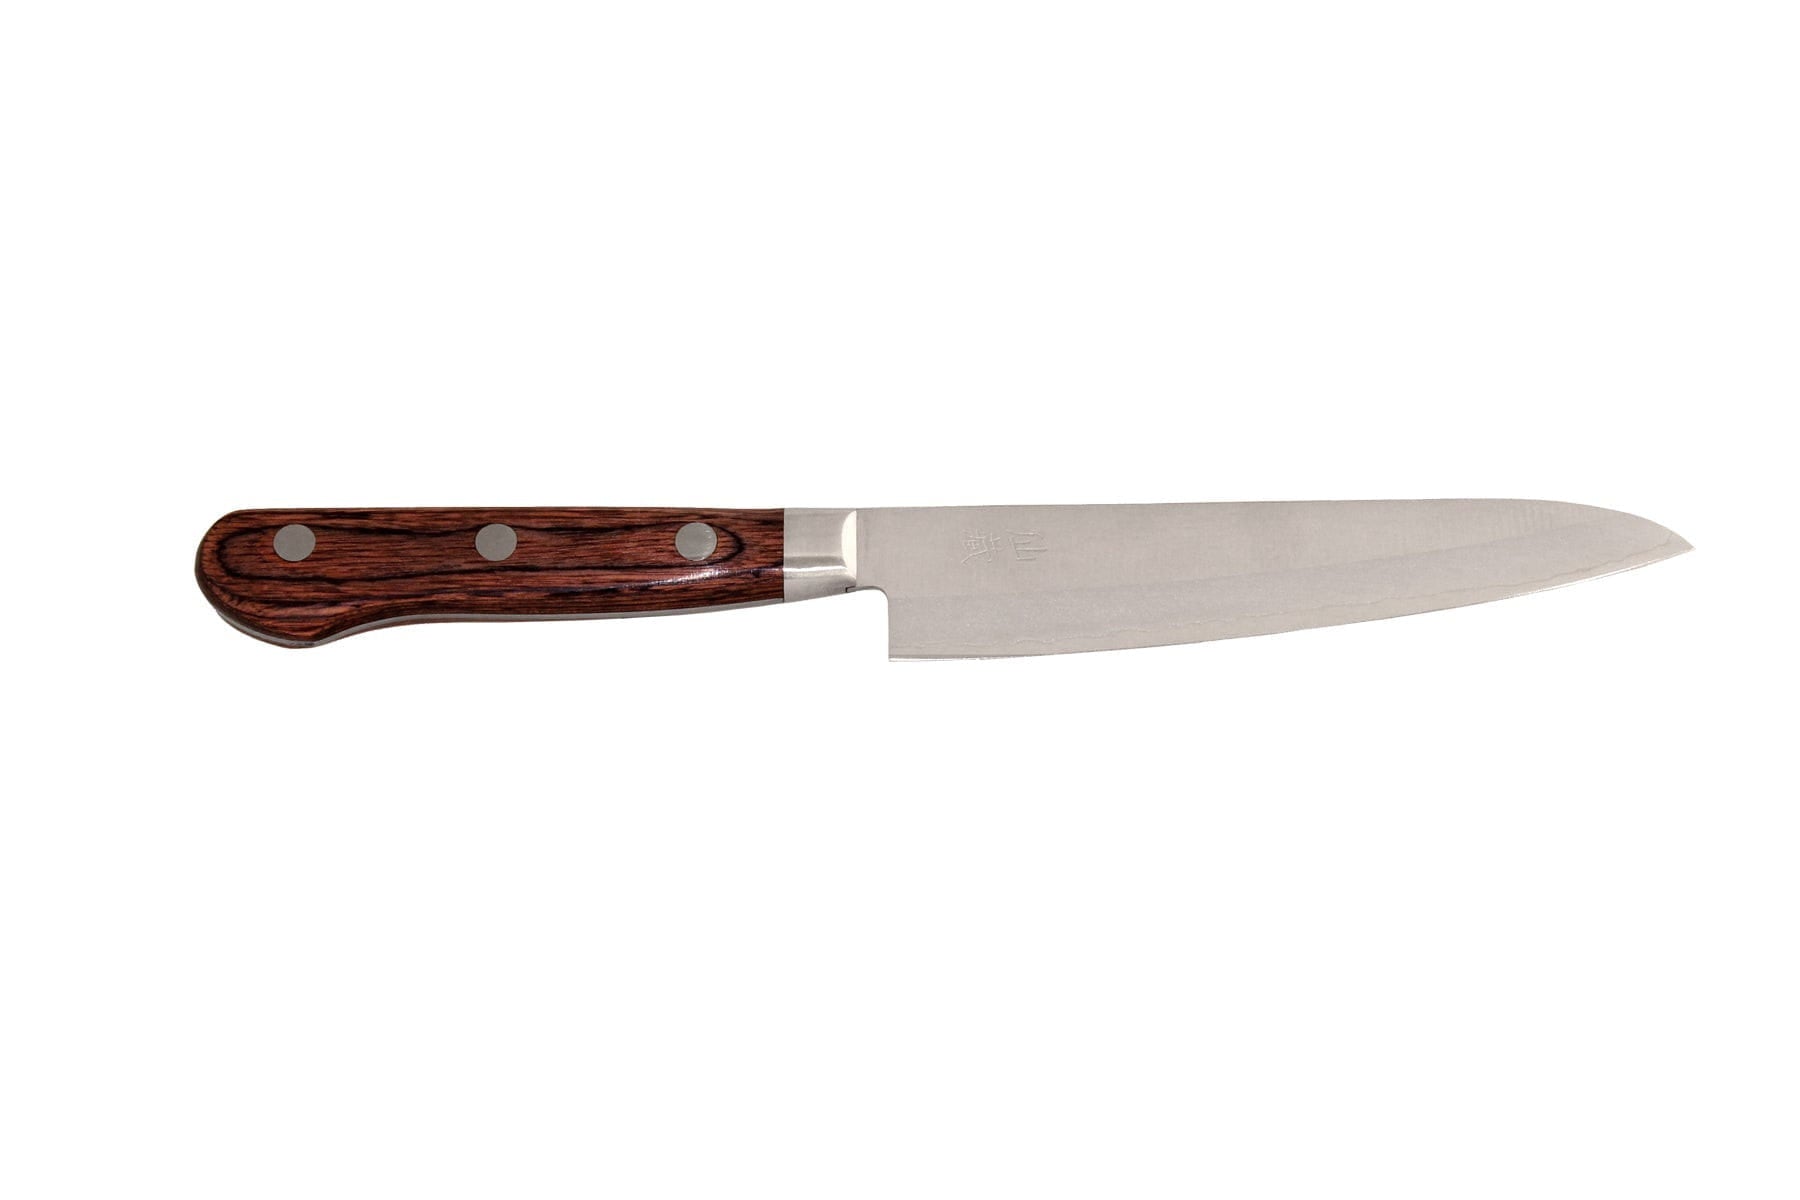 Senzo als 04 Universal Messer, 13,5 cm gekleidet